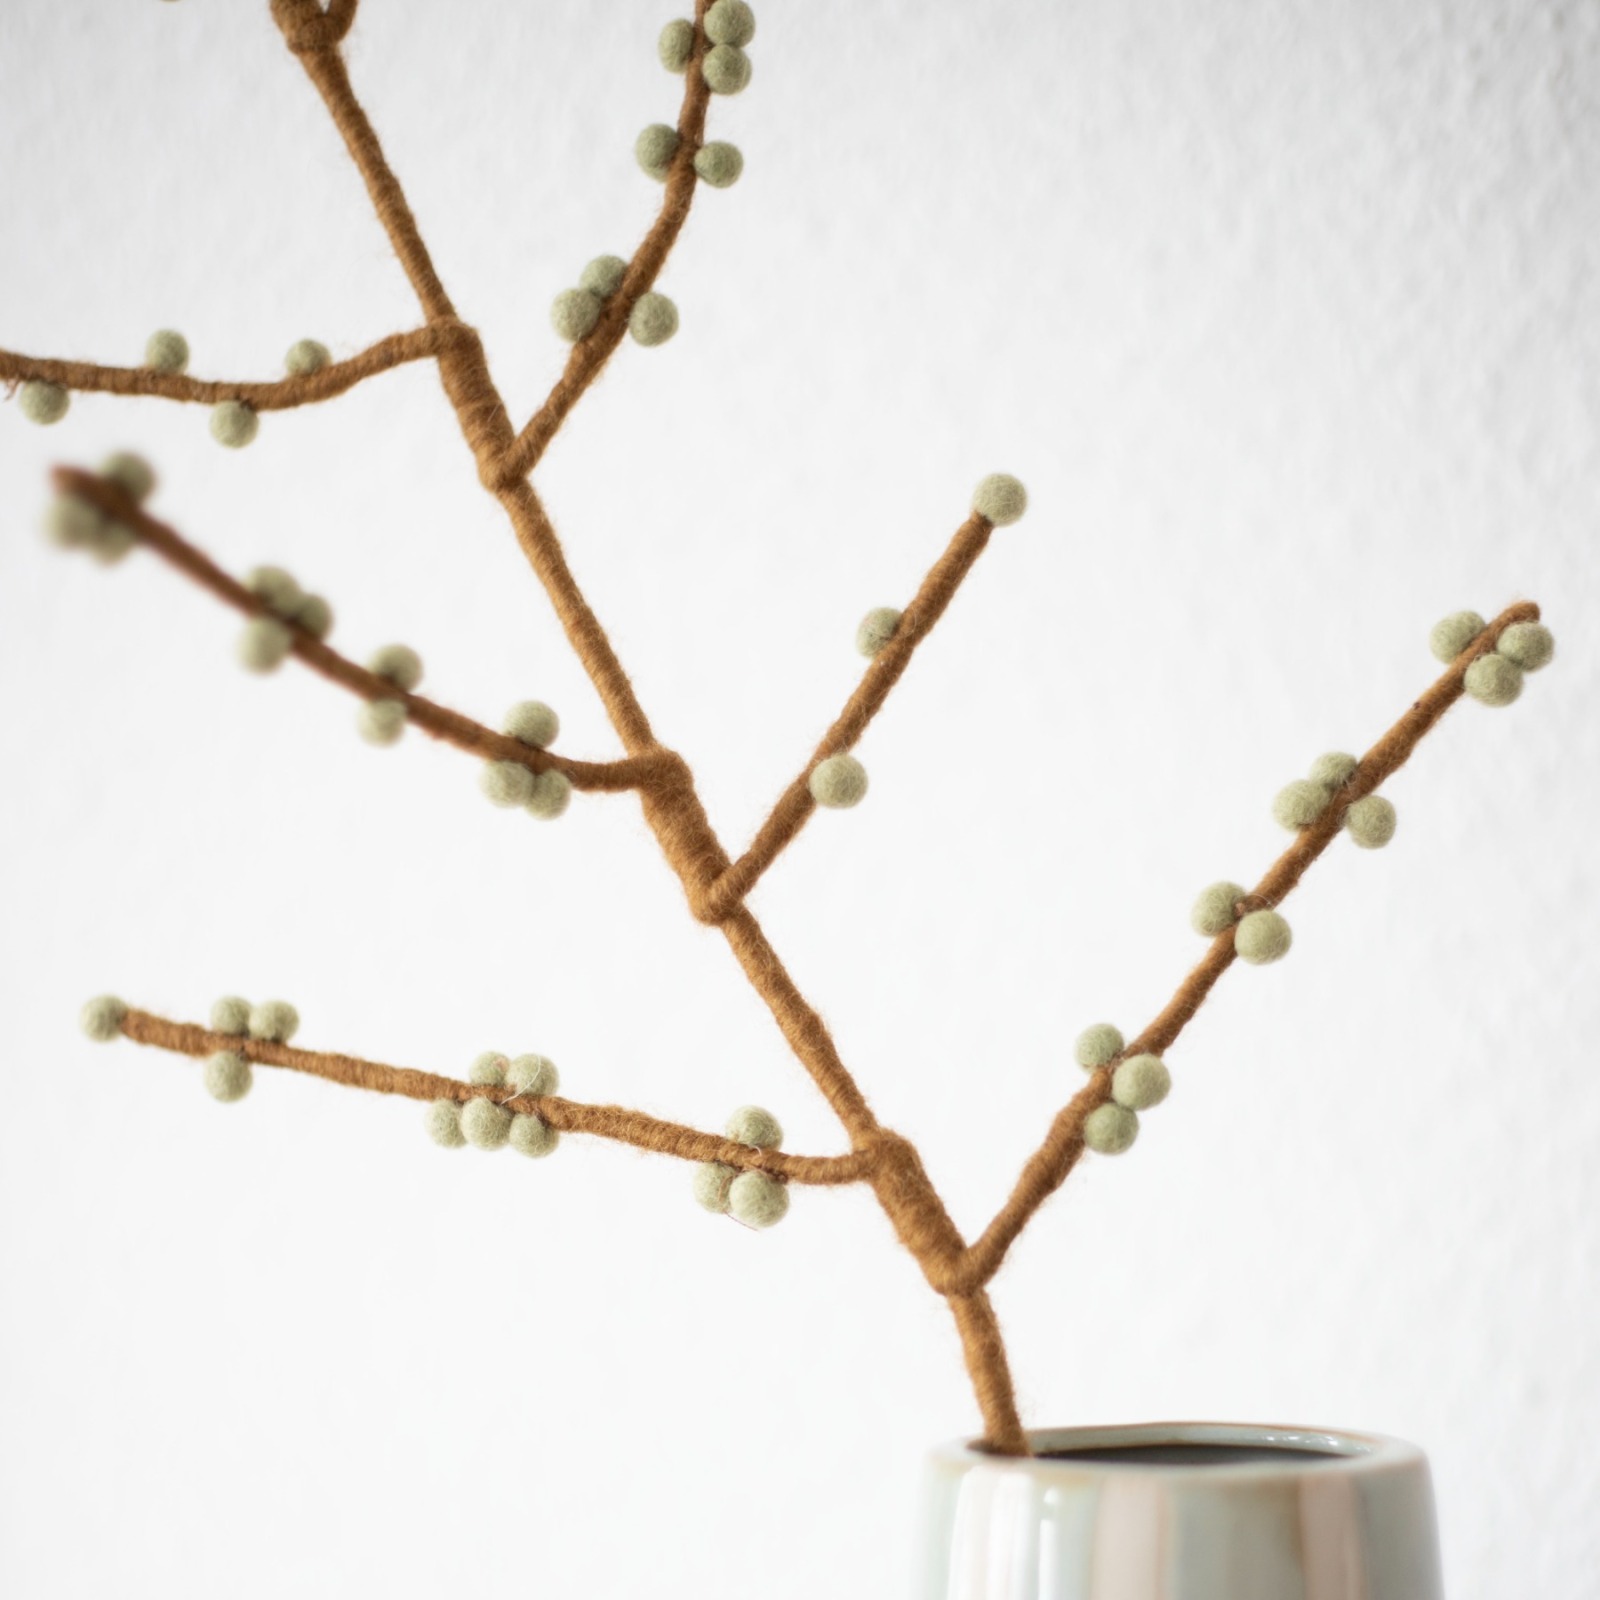 Handgefilzter Zweig mit mintgrünen Beeren: Vielseitige Dekoration für jede Jahreszeit 7